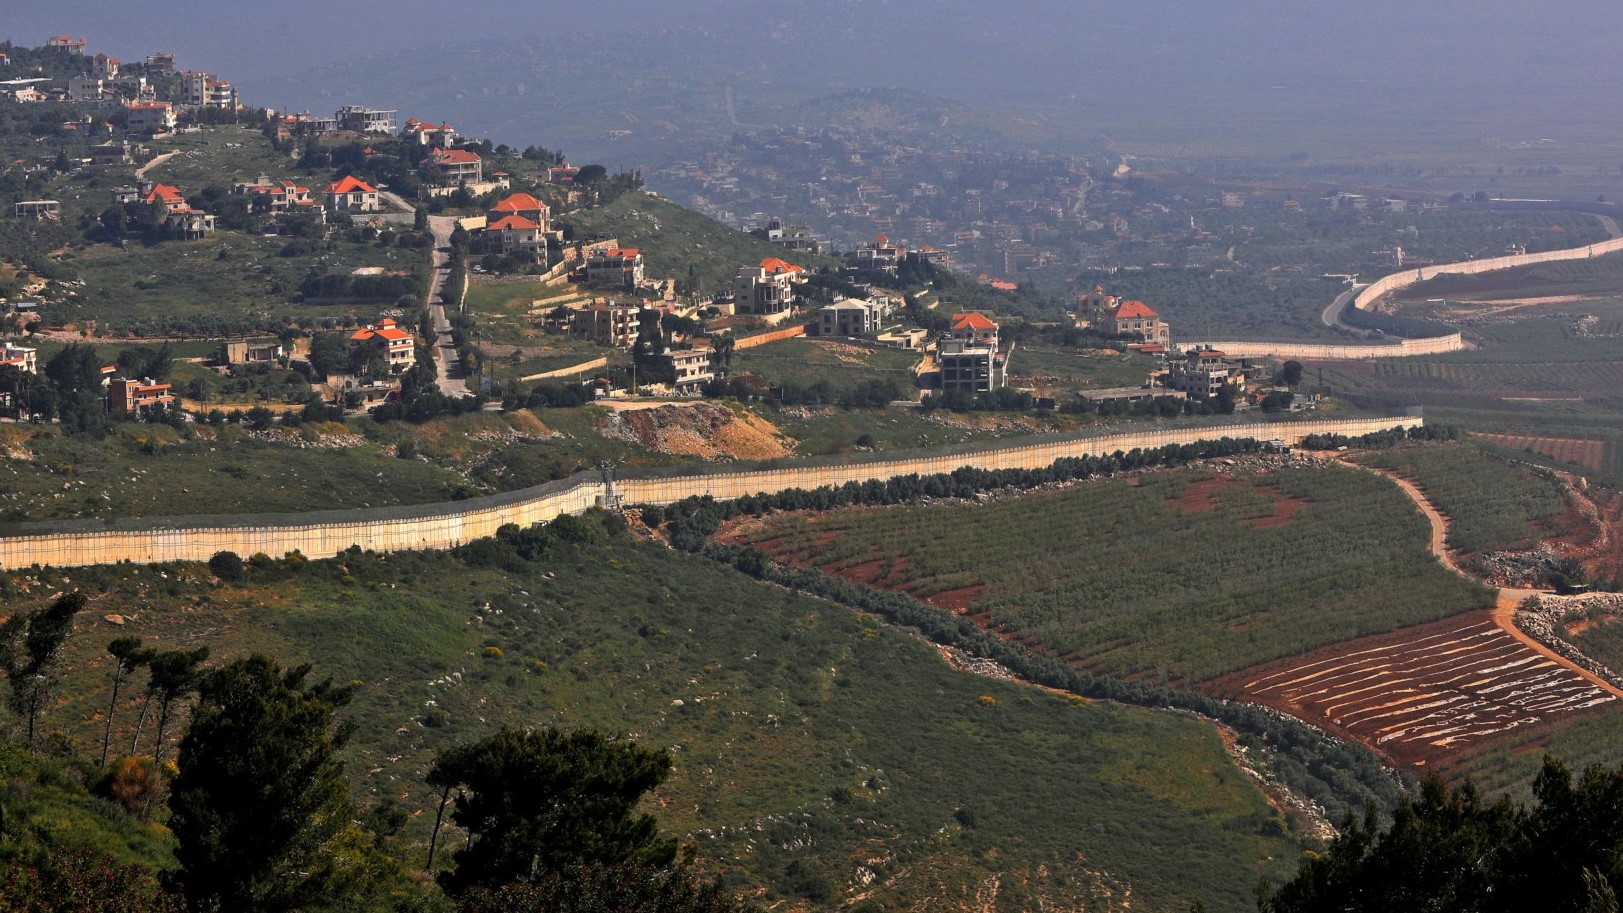 التقطت هذه الصورة في 28 أبريل 2021 بالقرب من كيبوتس مسغاف عام شمال إسرائيل ، وتظهر الجدار الحدودي مع لبنان